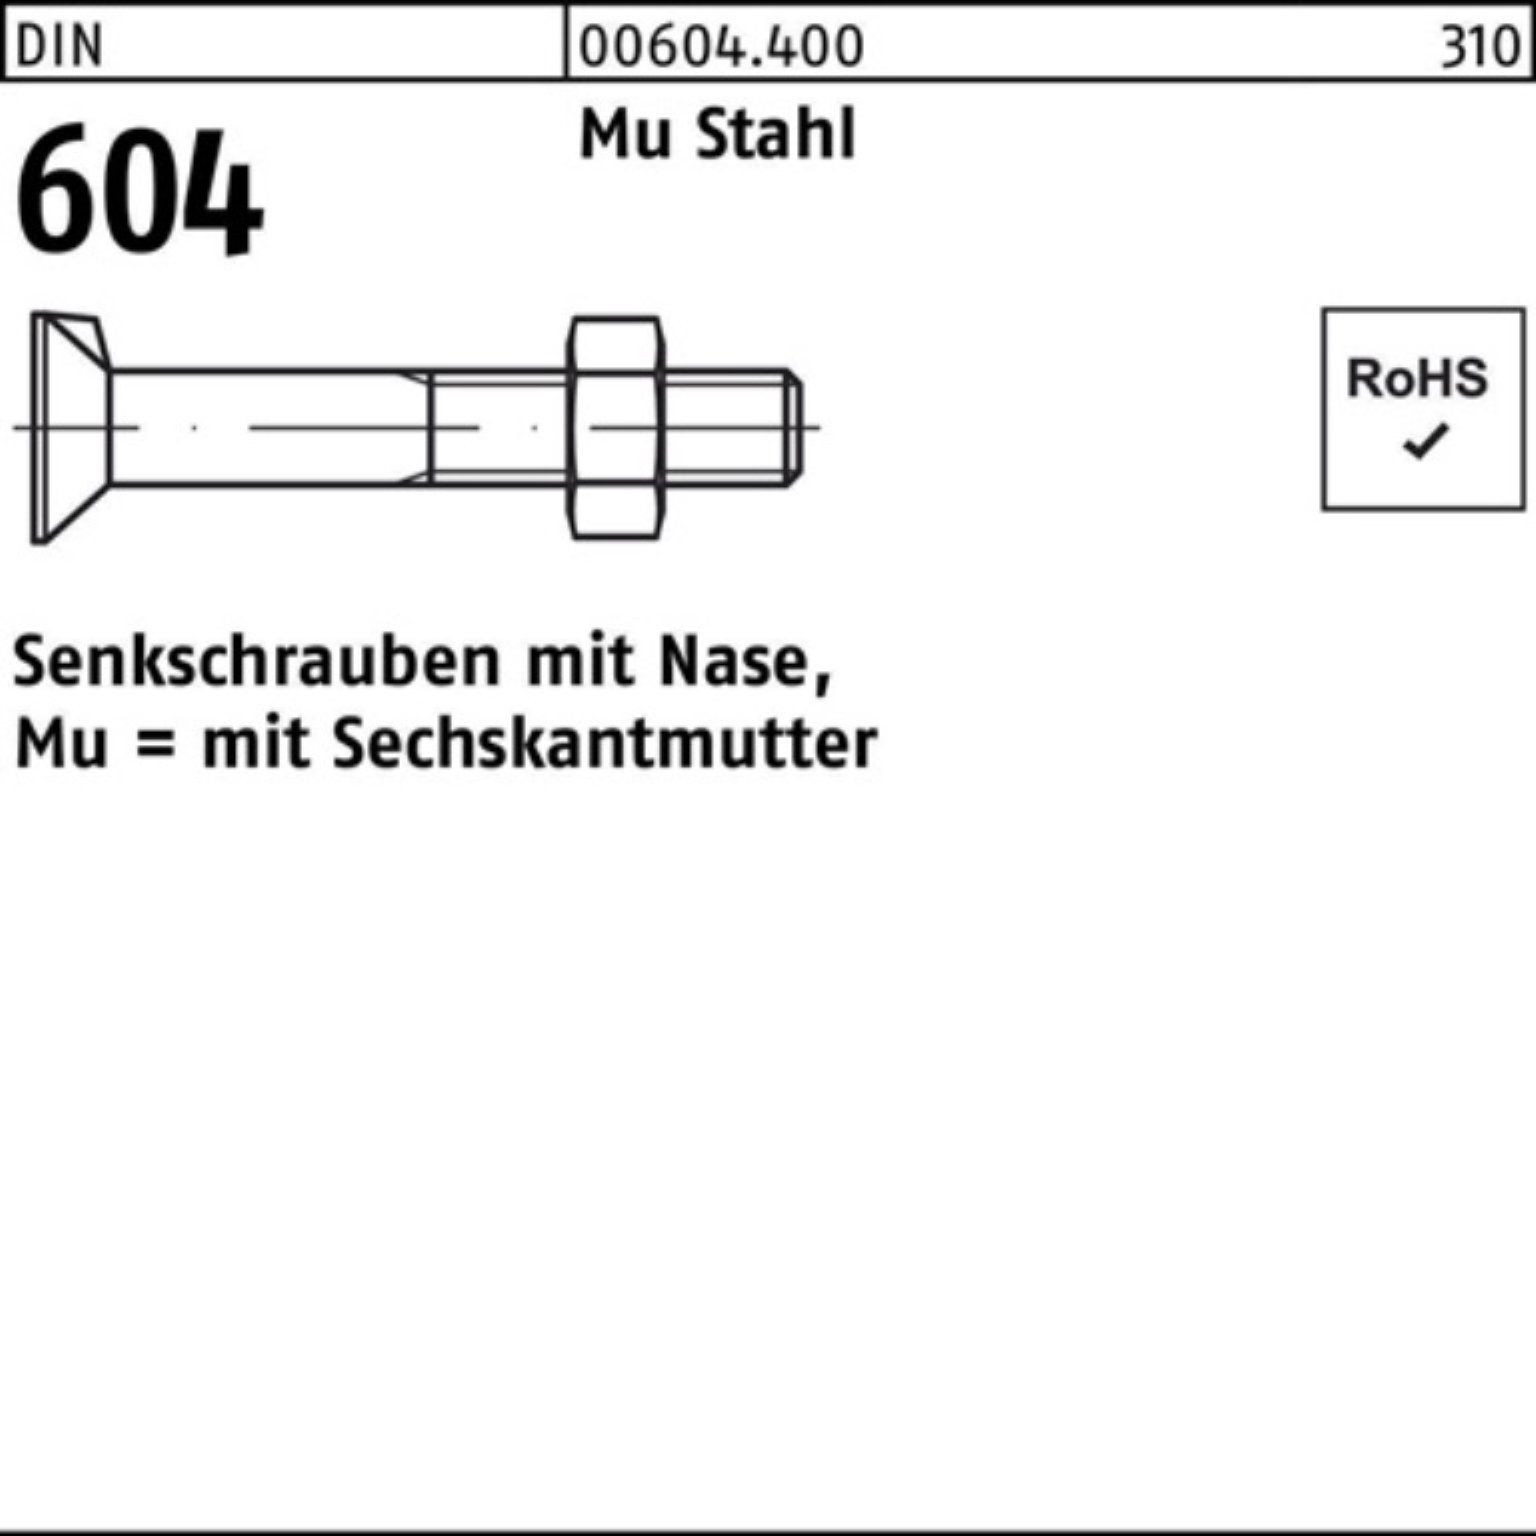 Senkschraube Stahl Reyher 40 Mu Pack M16x Nase/6-ktmutter 100er 5 DIN 4.6 604 Senkschraube